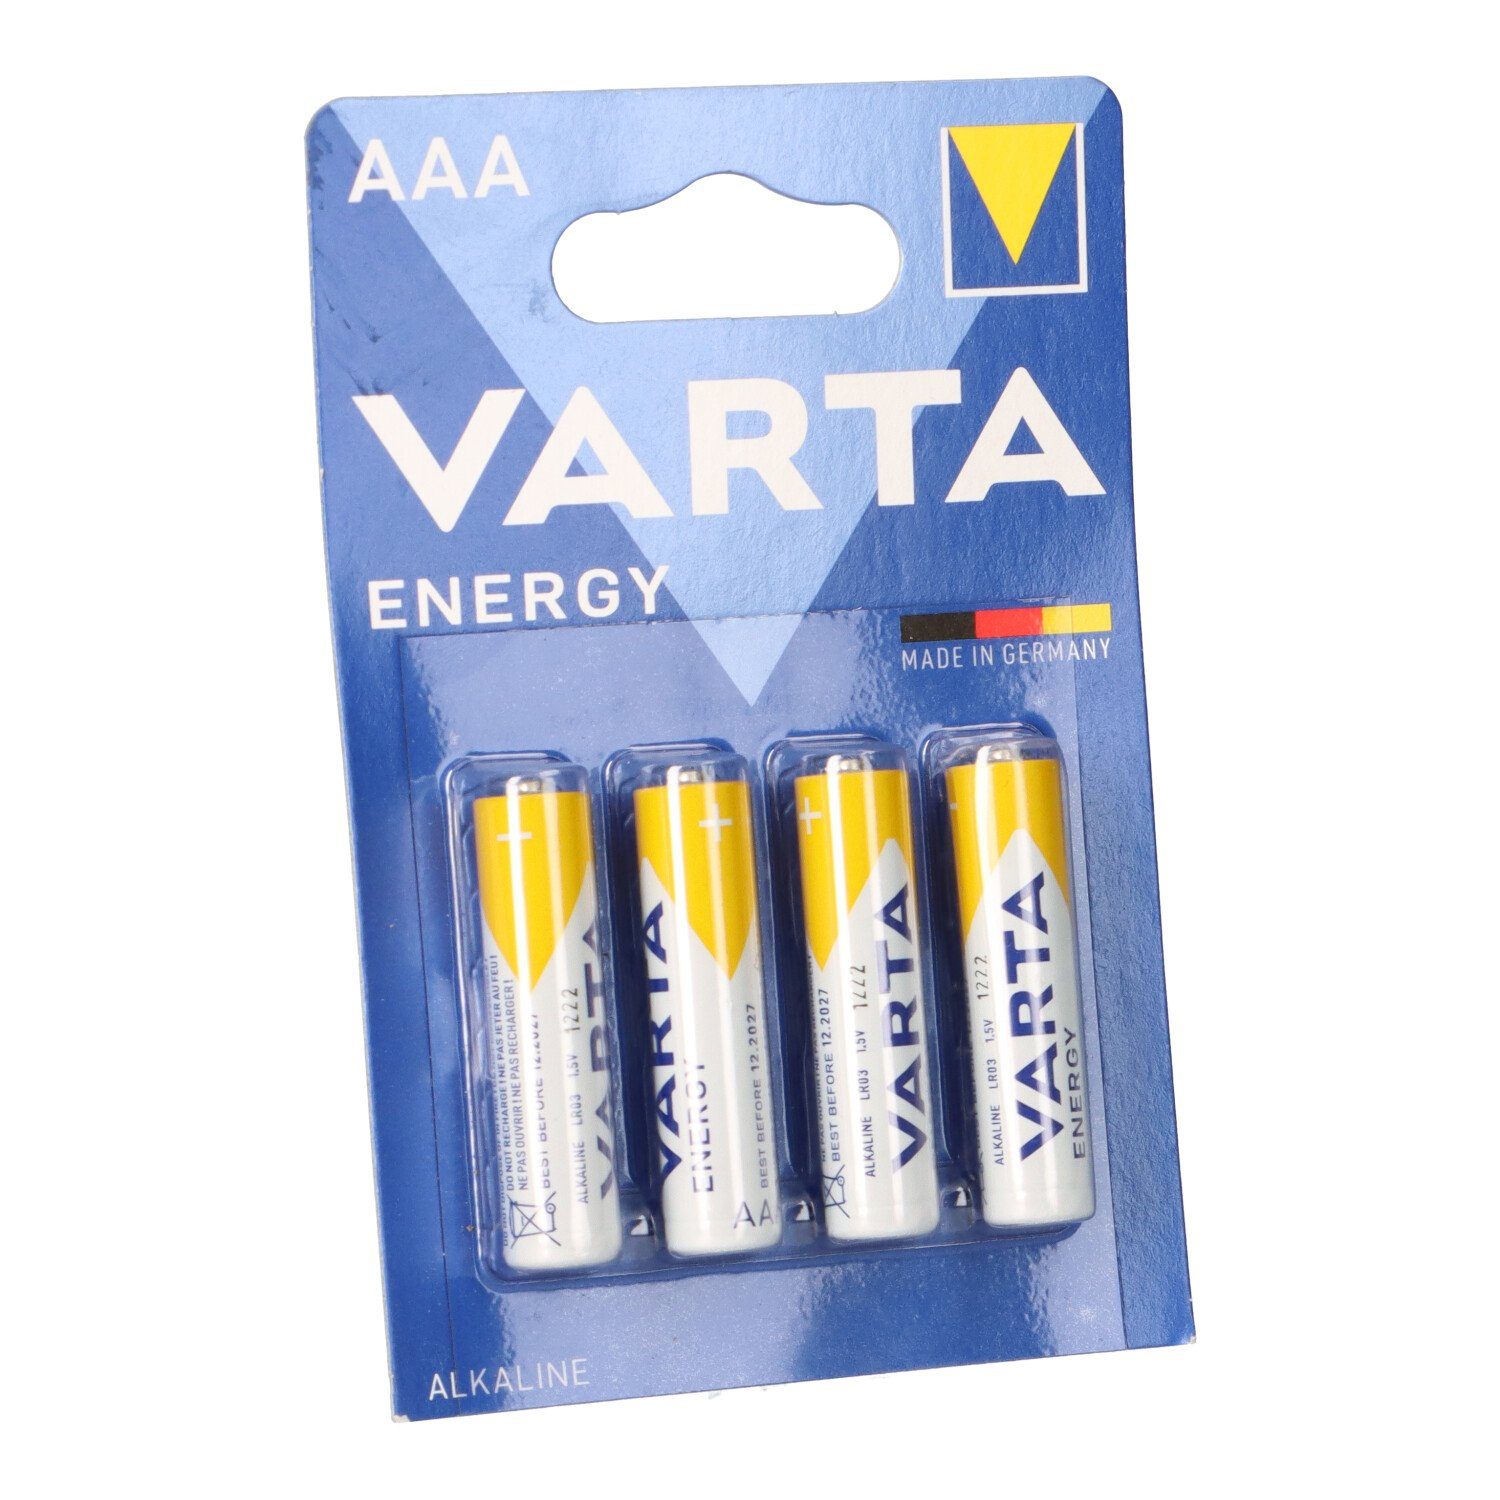 VARTA Varta Energy AlMn AAA 1,5V Micro Batterie 4er Blister Batterie